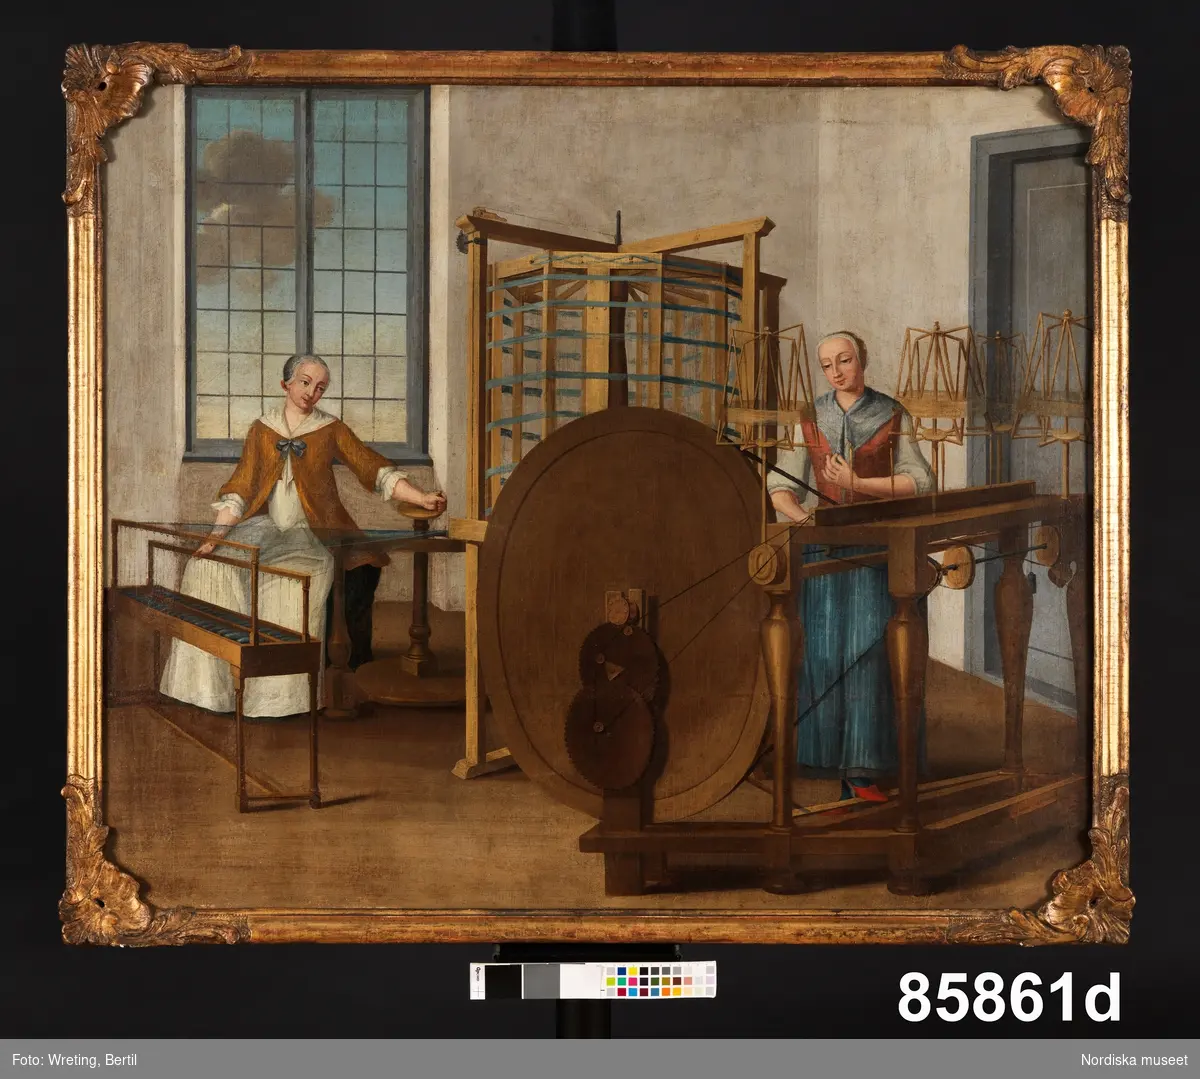 Huvudliggaren:
"4 oljemålningar från Stockholm. 
Å duk, med blindramar. Framställa scener från ett silkespinneri under 1700-talet. 
a) Utan raminfattning. Framställer väfning och väfuppsättning. tre manliga figurer. B 112 cm, H 99cm
b) Med raminfattning. Framställer bobning. Två kvinnliga personer. B 112 cm, H 99 cm (öfver blindramen)
c) Med raminfattning. Framställer tvinning och härfutredning (?). Två kvinnliga figurer. B 112 cm, H 94 cm (öfver blindramen).
d) Med raminfattning. Framställer varpning och tvinning. Två kvinnliga figurer. B 112 cm, H 94 cm (öfver blindramen).

a) Ett stort hack å duken. 
b) Förgyllningen och hörnornamenten skadade å ramen
c) Ramen lös. Tre delar. Förgyllningen och hörnornamenten skadade å ramen. Ramen mycket maskstungen.
d) Förgyllningen och hörnornamenten skadade. Ett mindre hål å duken."
Senare tillägg "konserverade 1955"

Katalogkort:
"Har tillhört sidenfabrikör Rudolf Stenberg, Stockholm +1803, samt hans son Emanuel Stenberg + 1834. Har brukats som dörröverstycken."